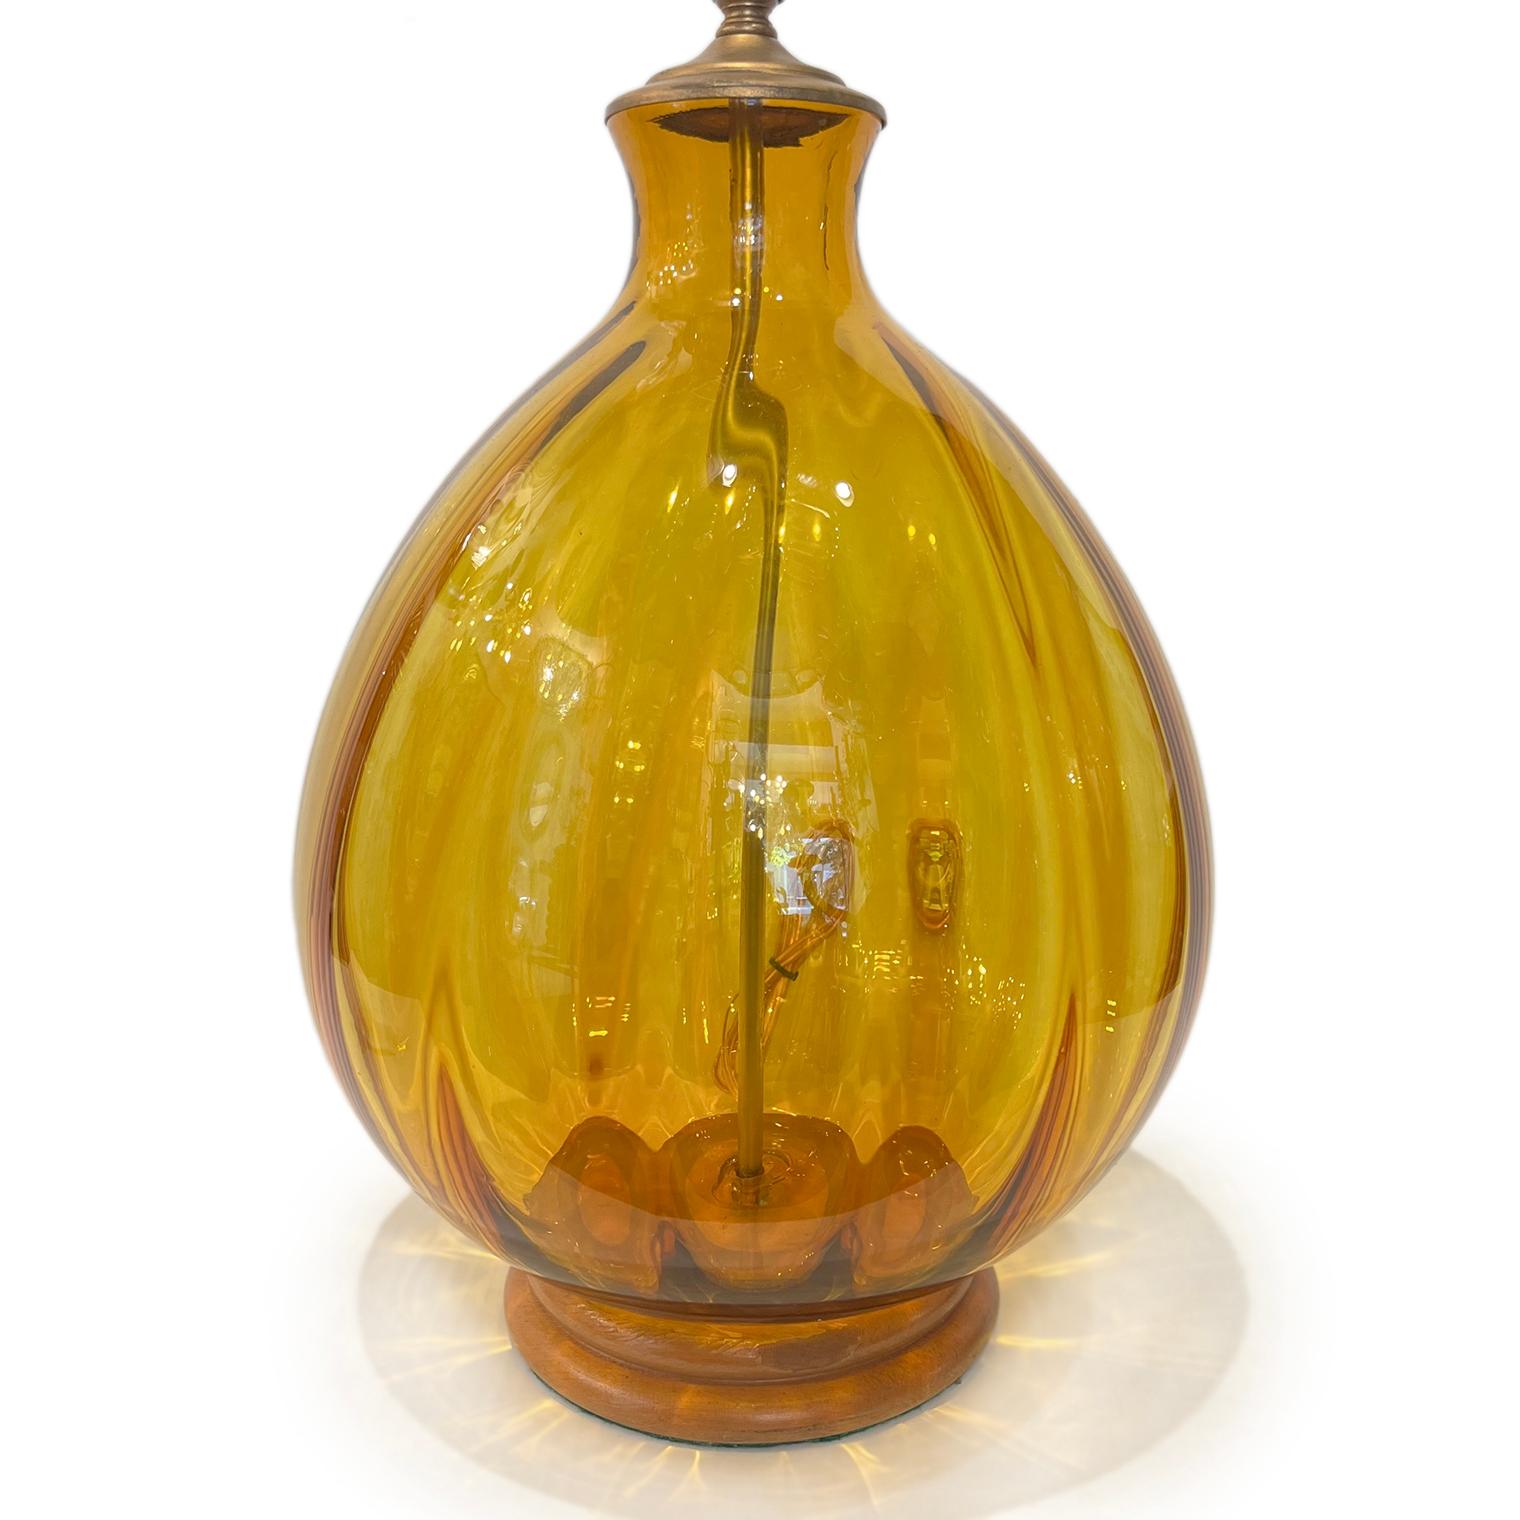 Lampe de table italienne en verre ambré datant des années 1960.

Mesures :
Hauteur du corps : 15.75